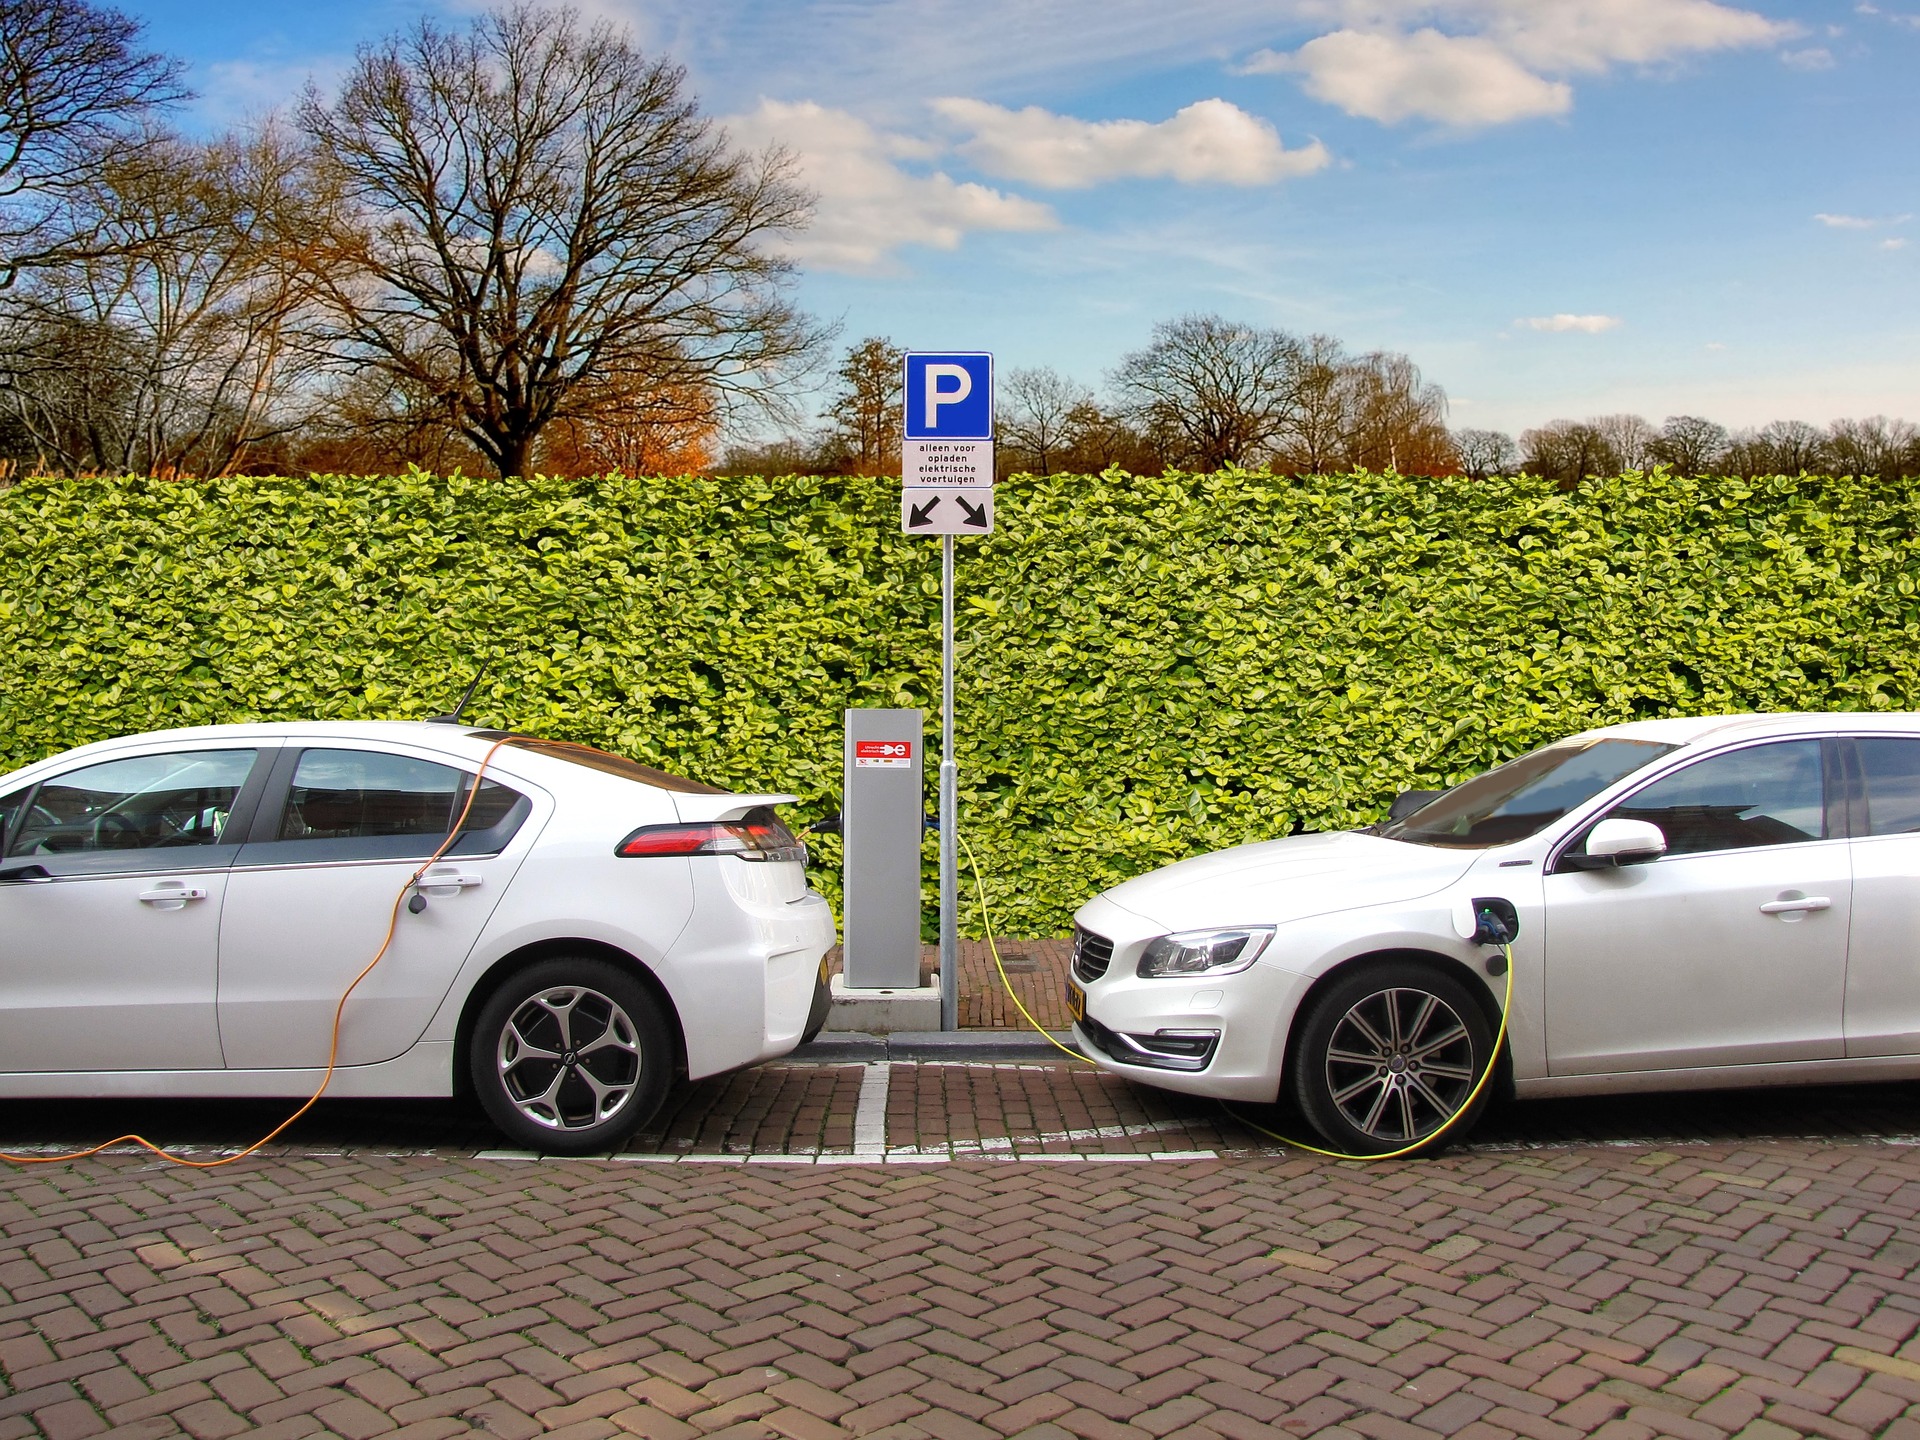 Borne de recharge voiture électrique et voiture hybride